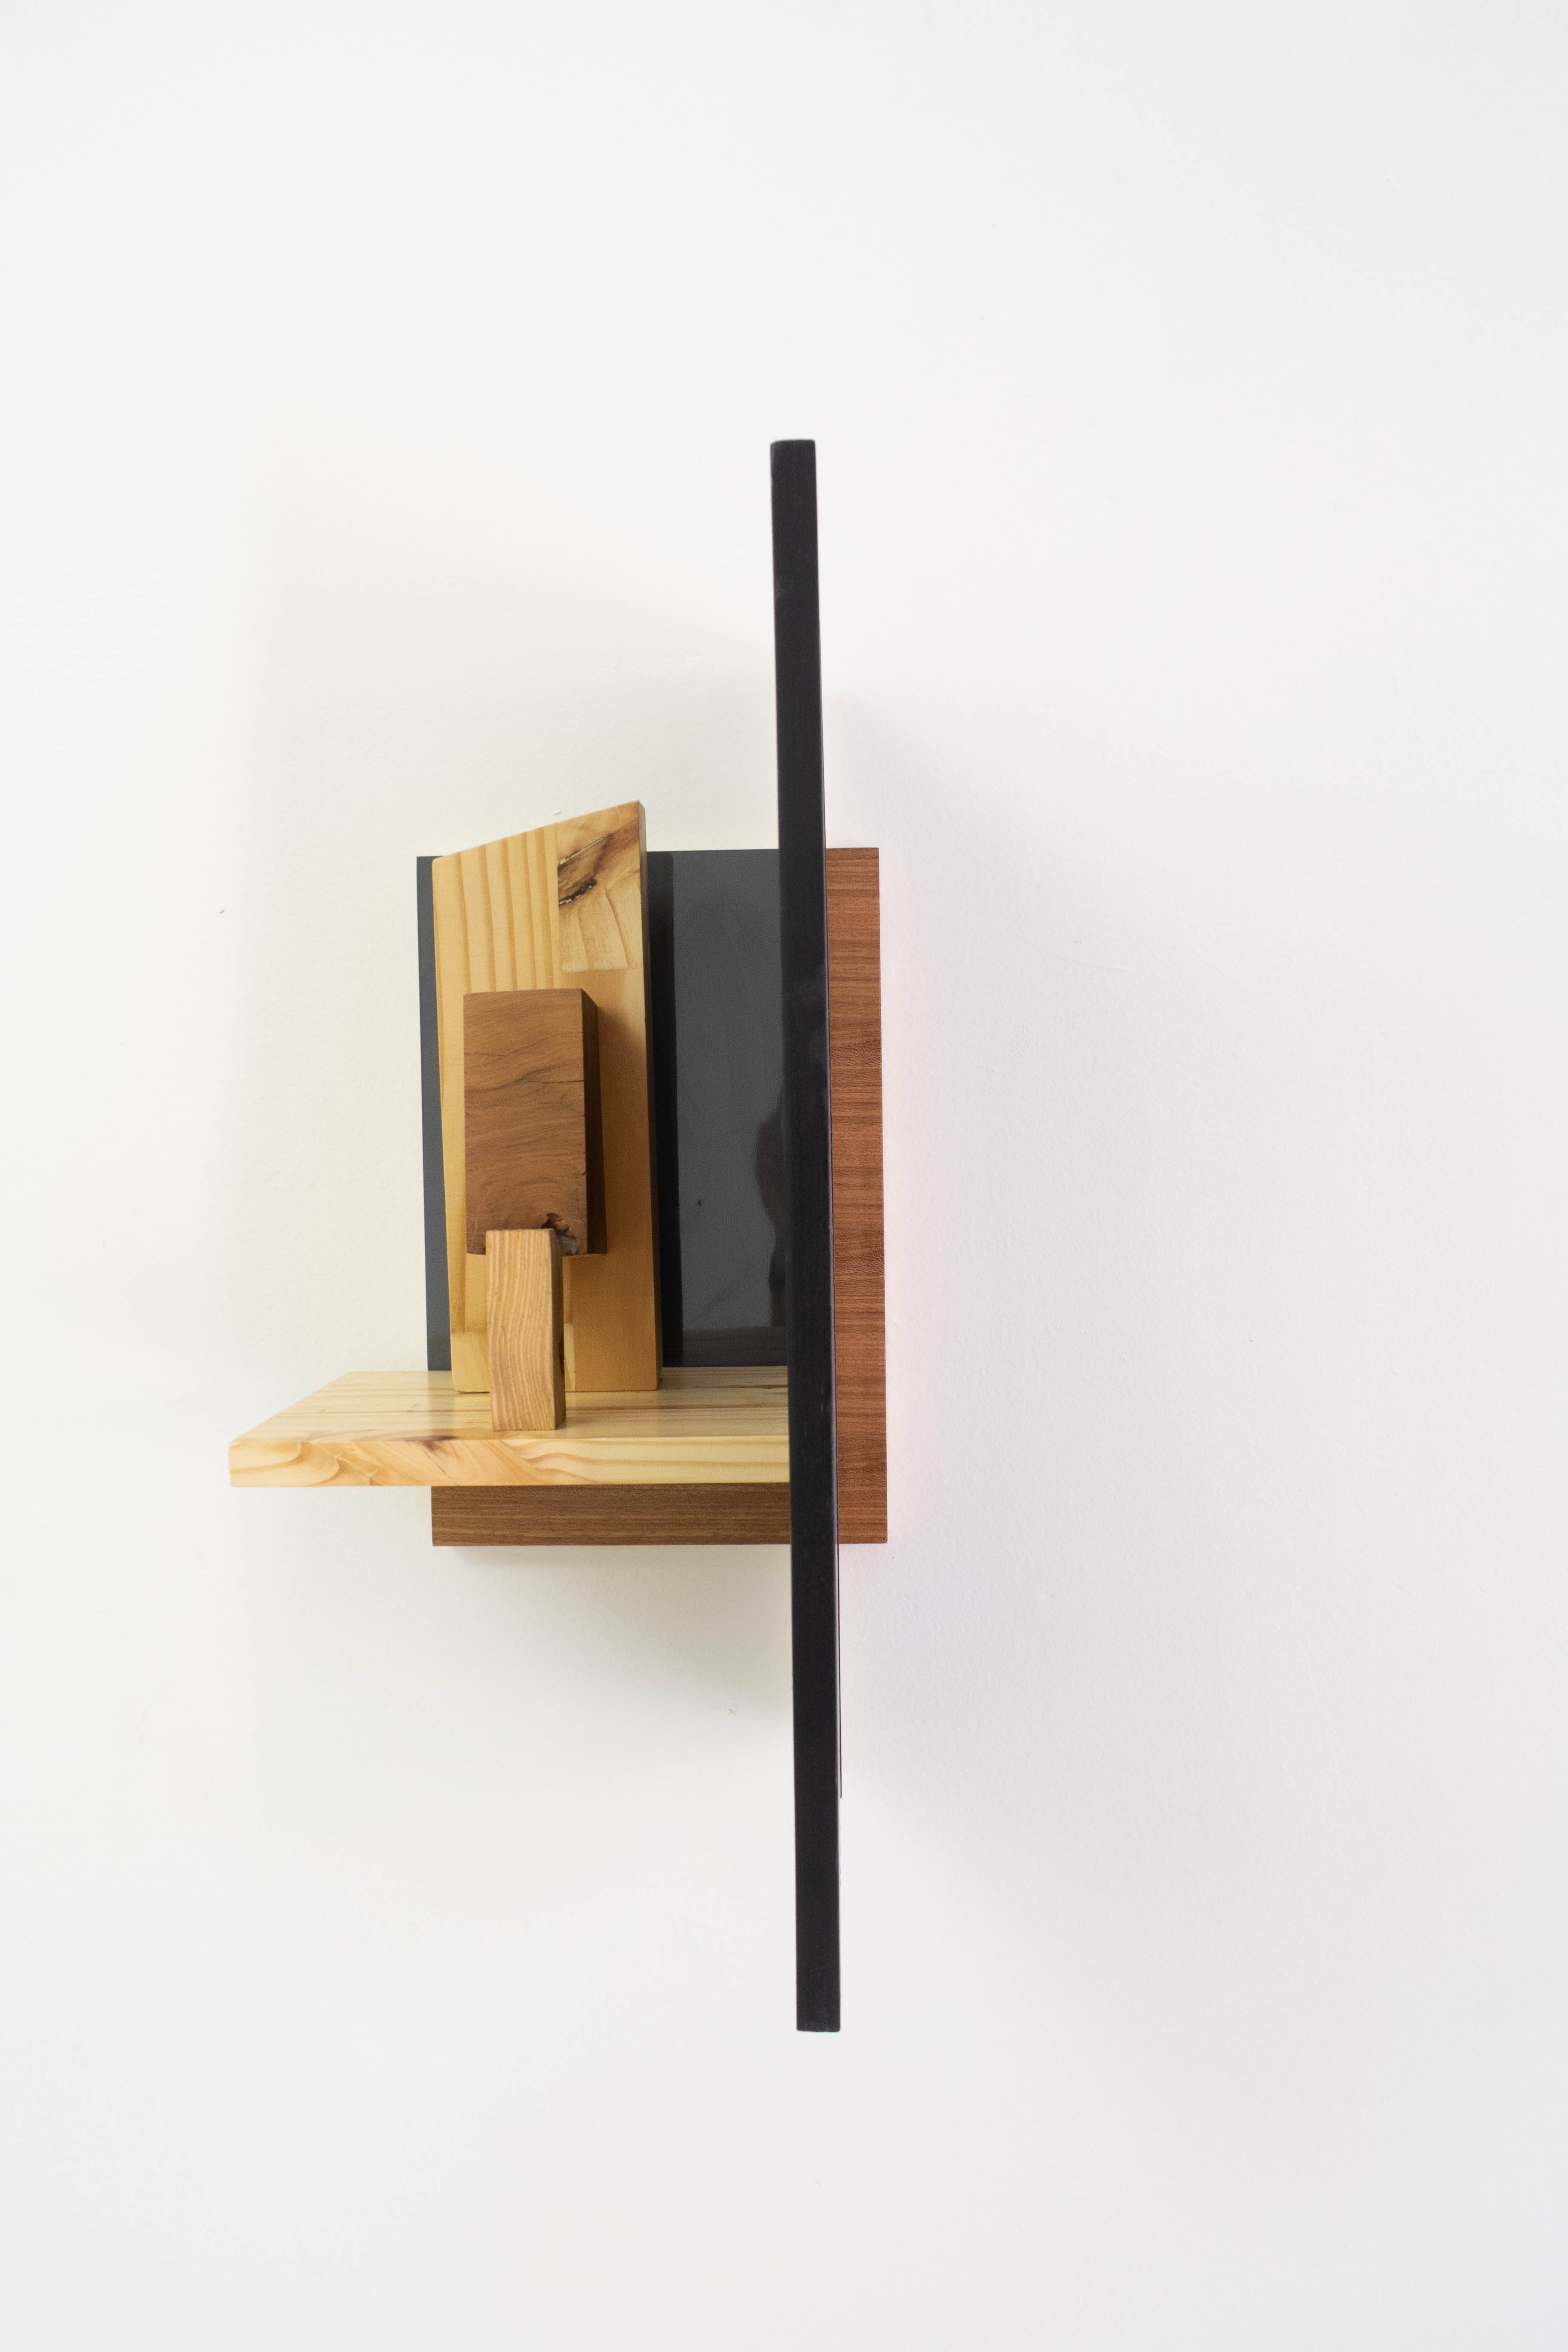 Gustavo Lourenção, Vizinho Informe, Escultura de parede em madeira e MDF, 52 x 25 x 23 cm, 2016